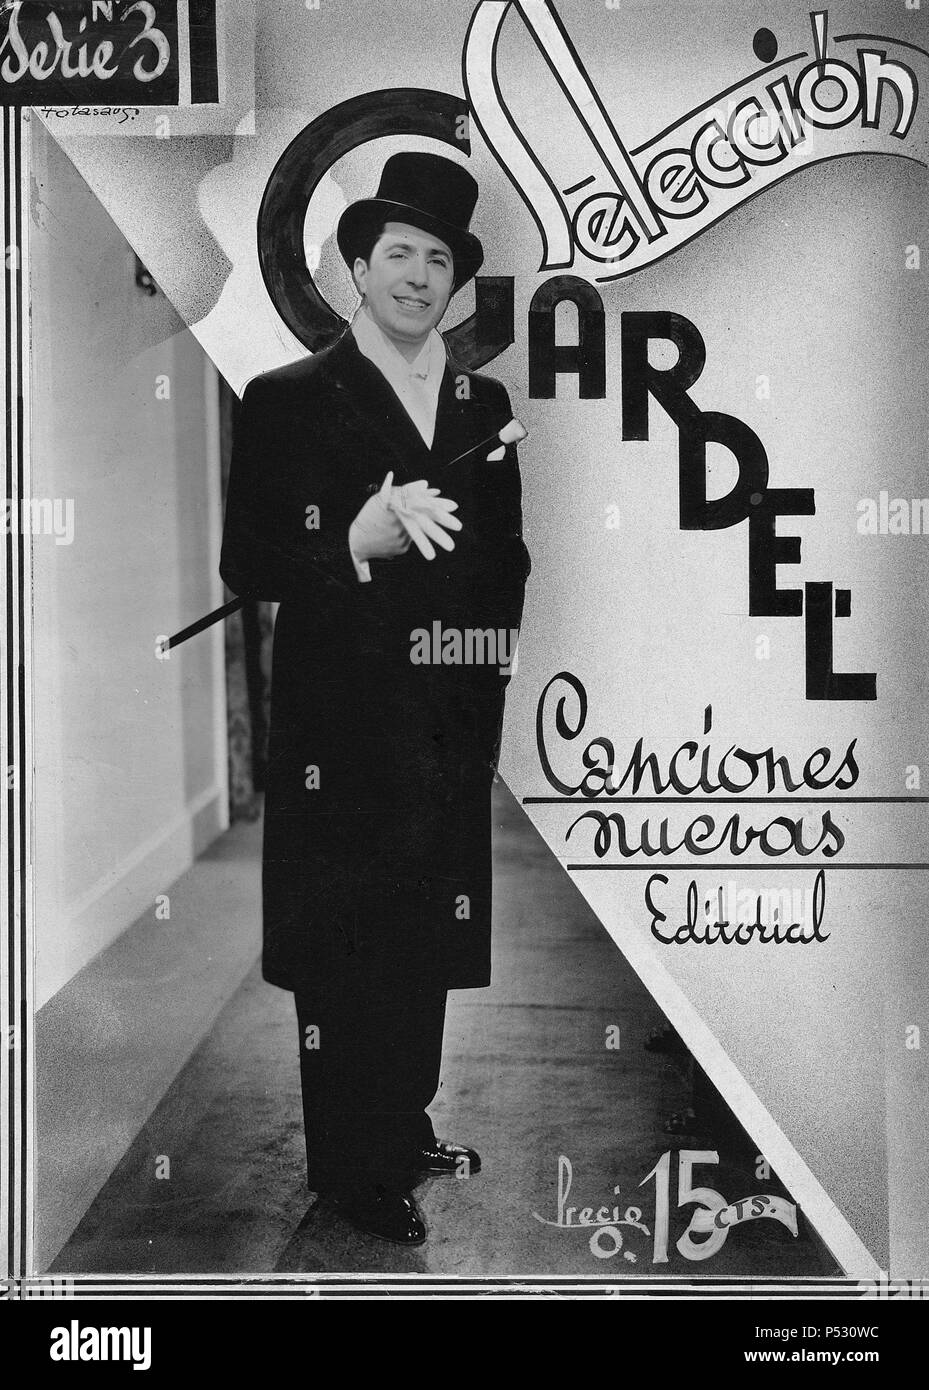 Carlos Gardel, cantante y Schauspieler Argentino. Kartell promocional. Stockfoto